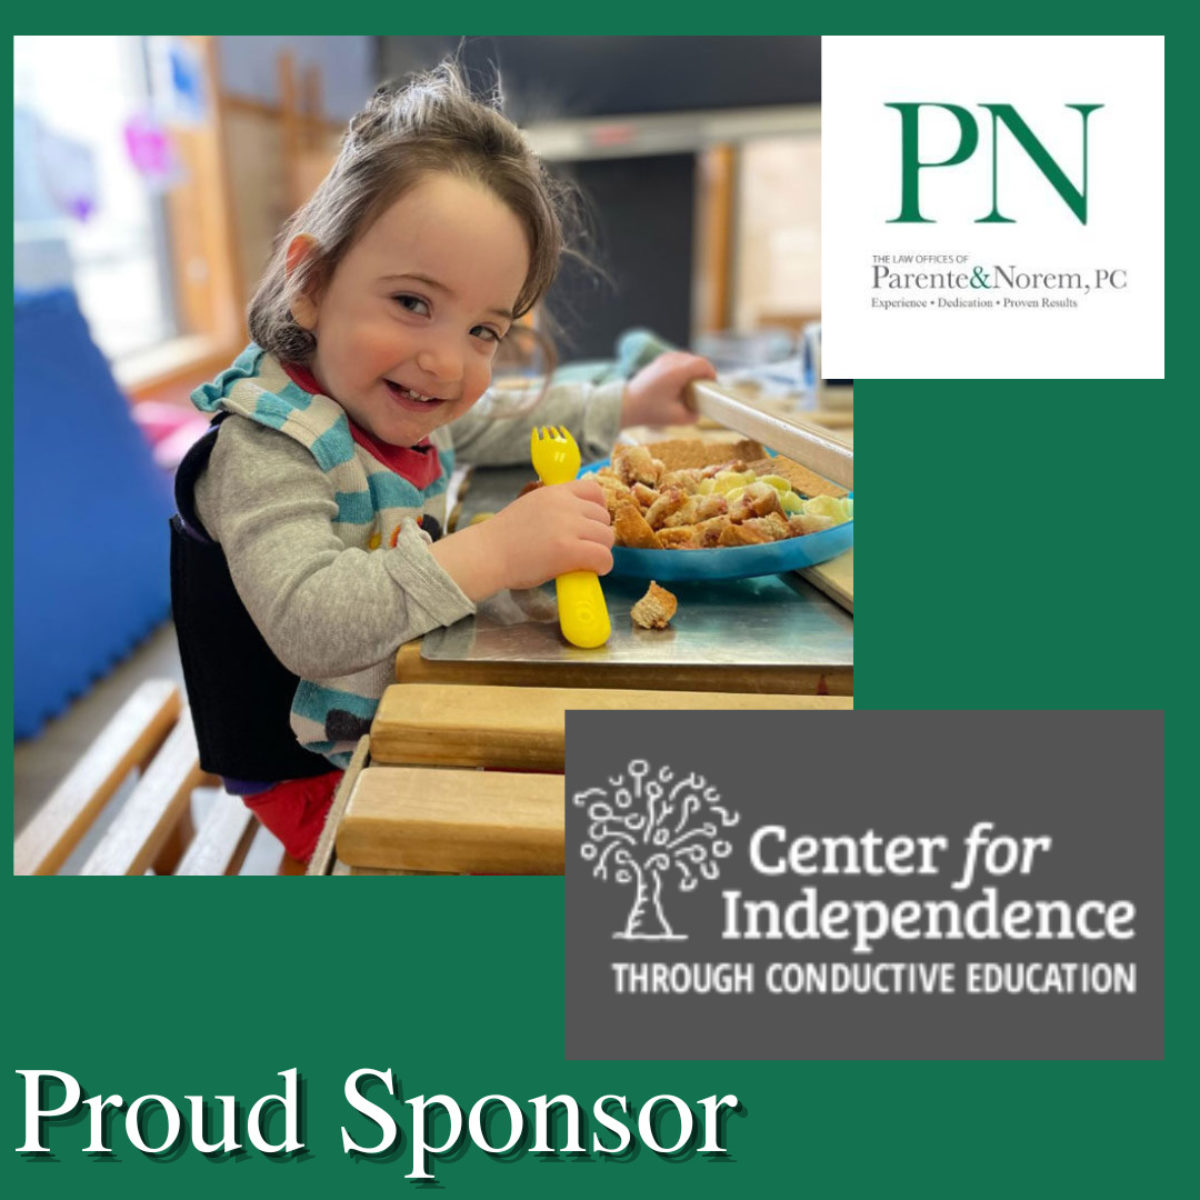 P&N BLOG | Parente & Norem Sponsors Center For Independence